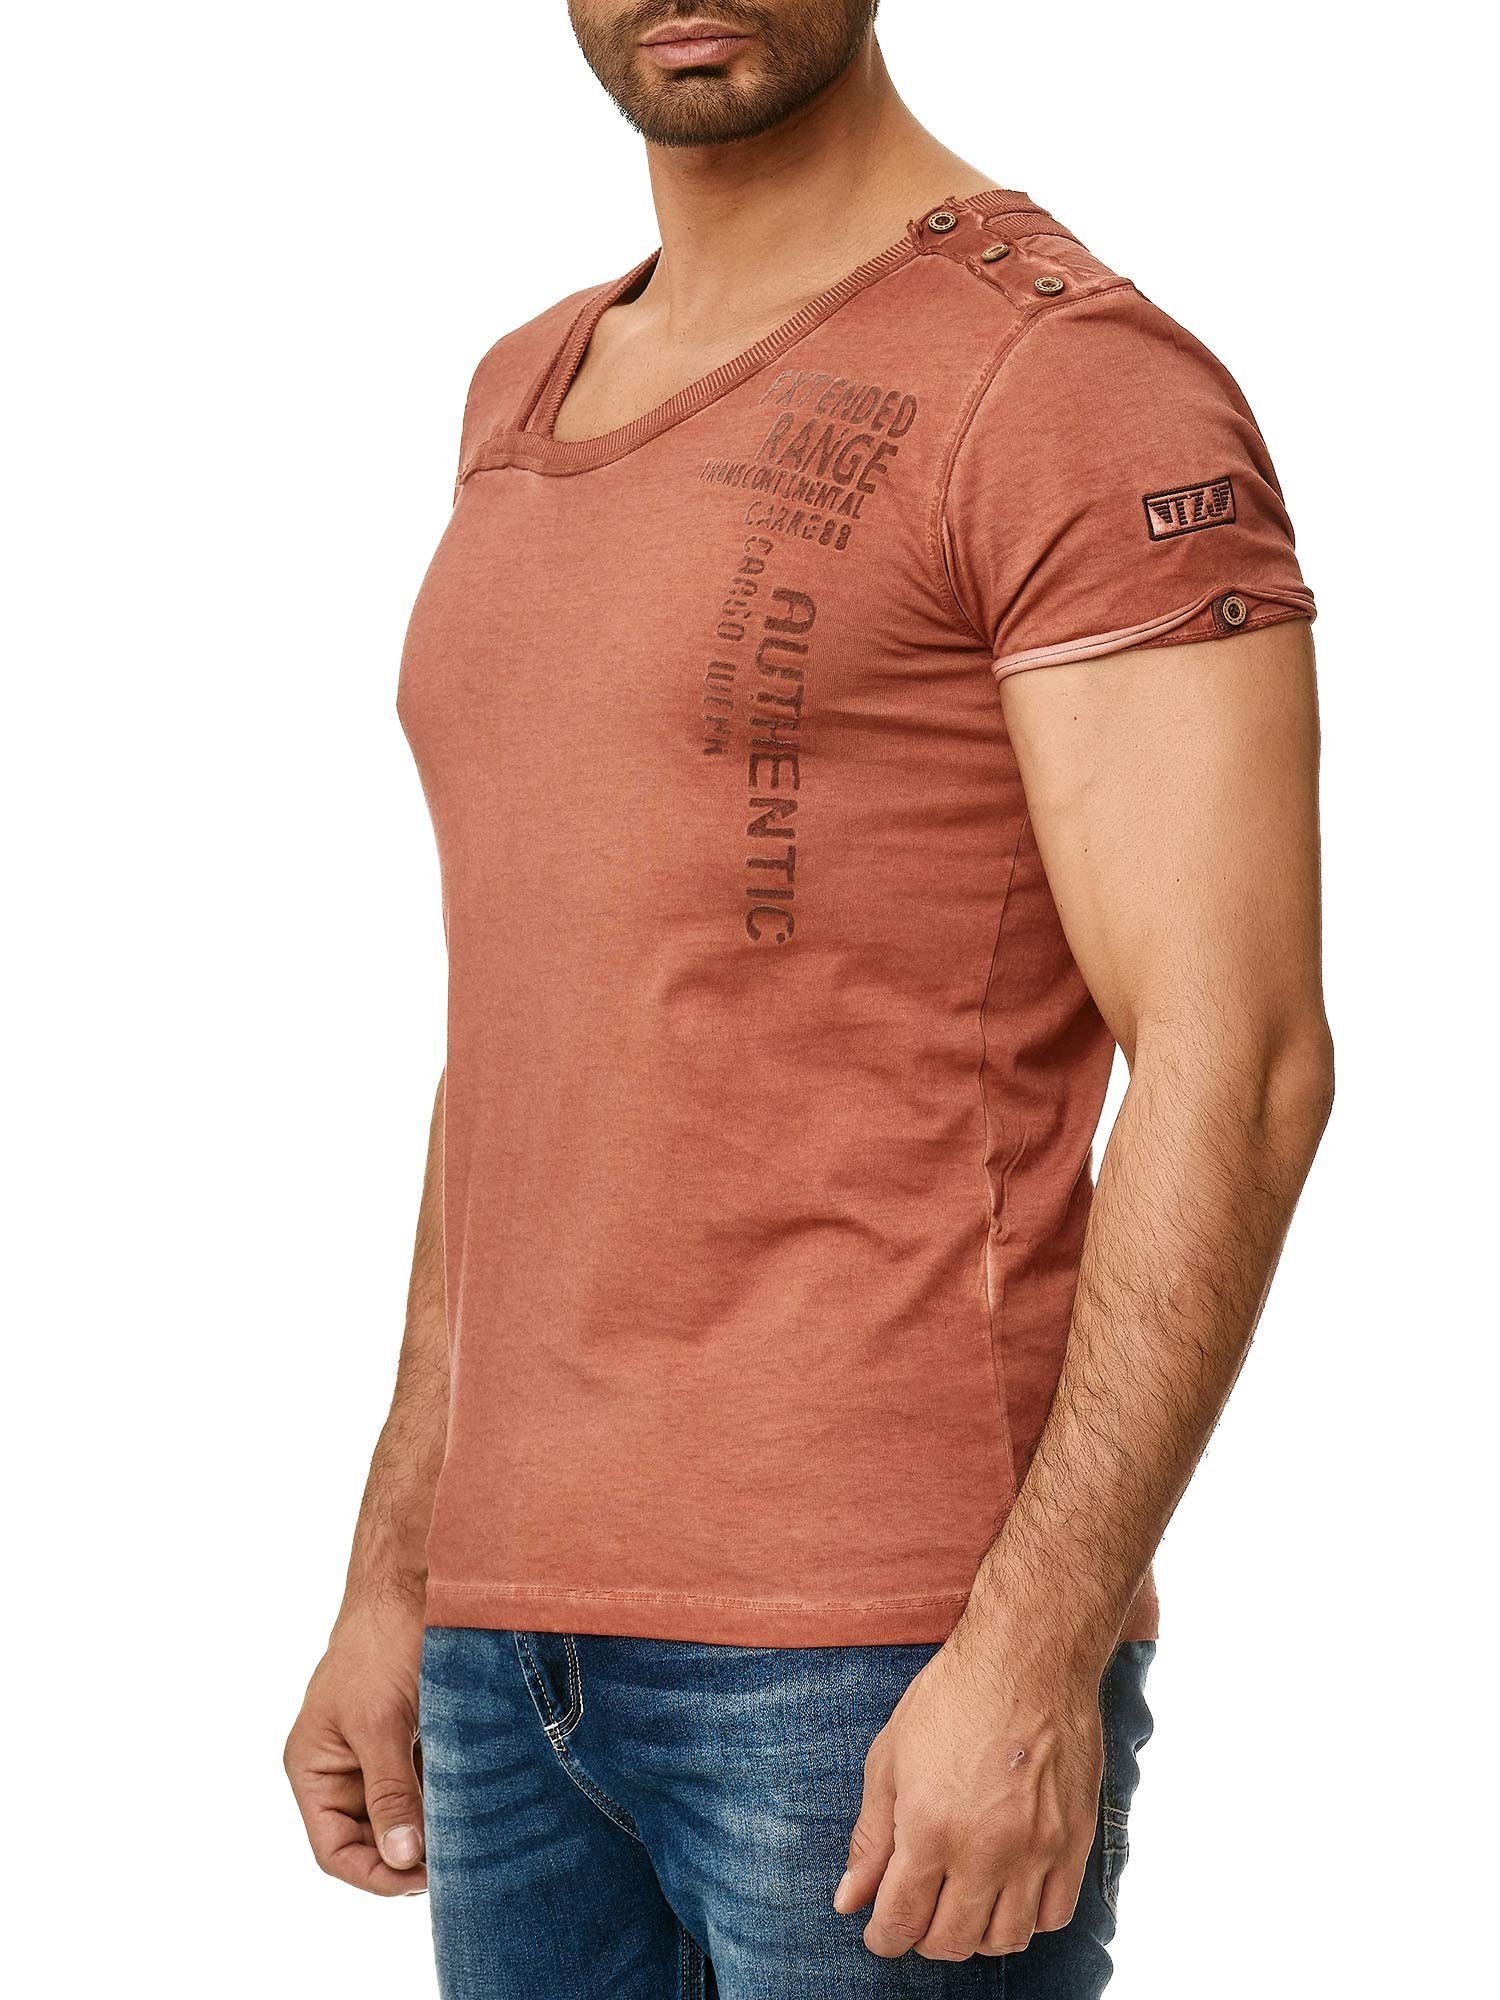 Tazzio T-Shirt 4022 in trendiger Ölwaschung mit stylischem Kragen und Knopfleiste an der Schulter